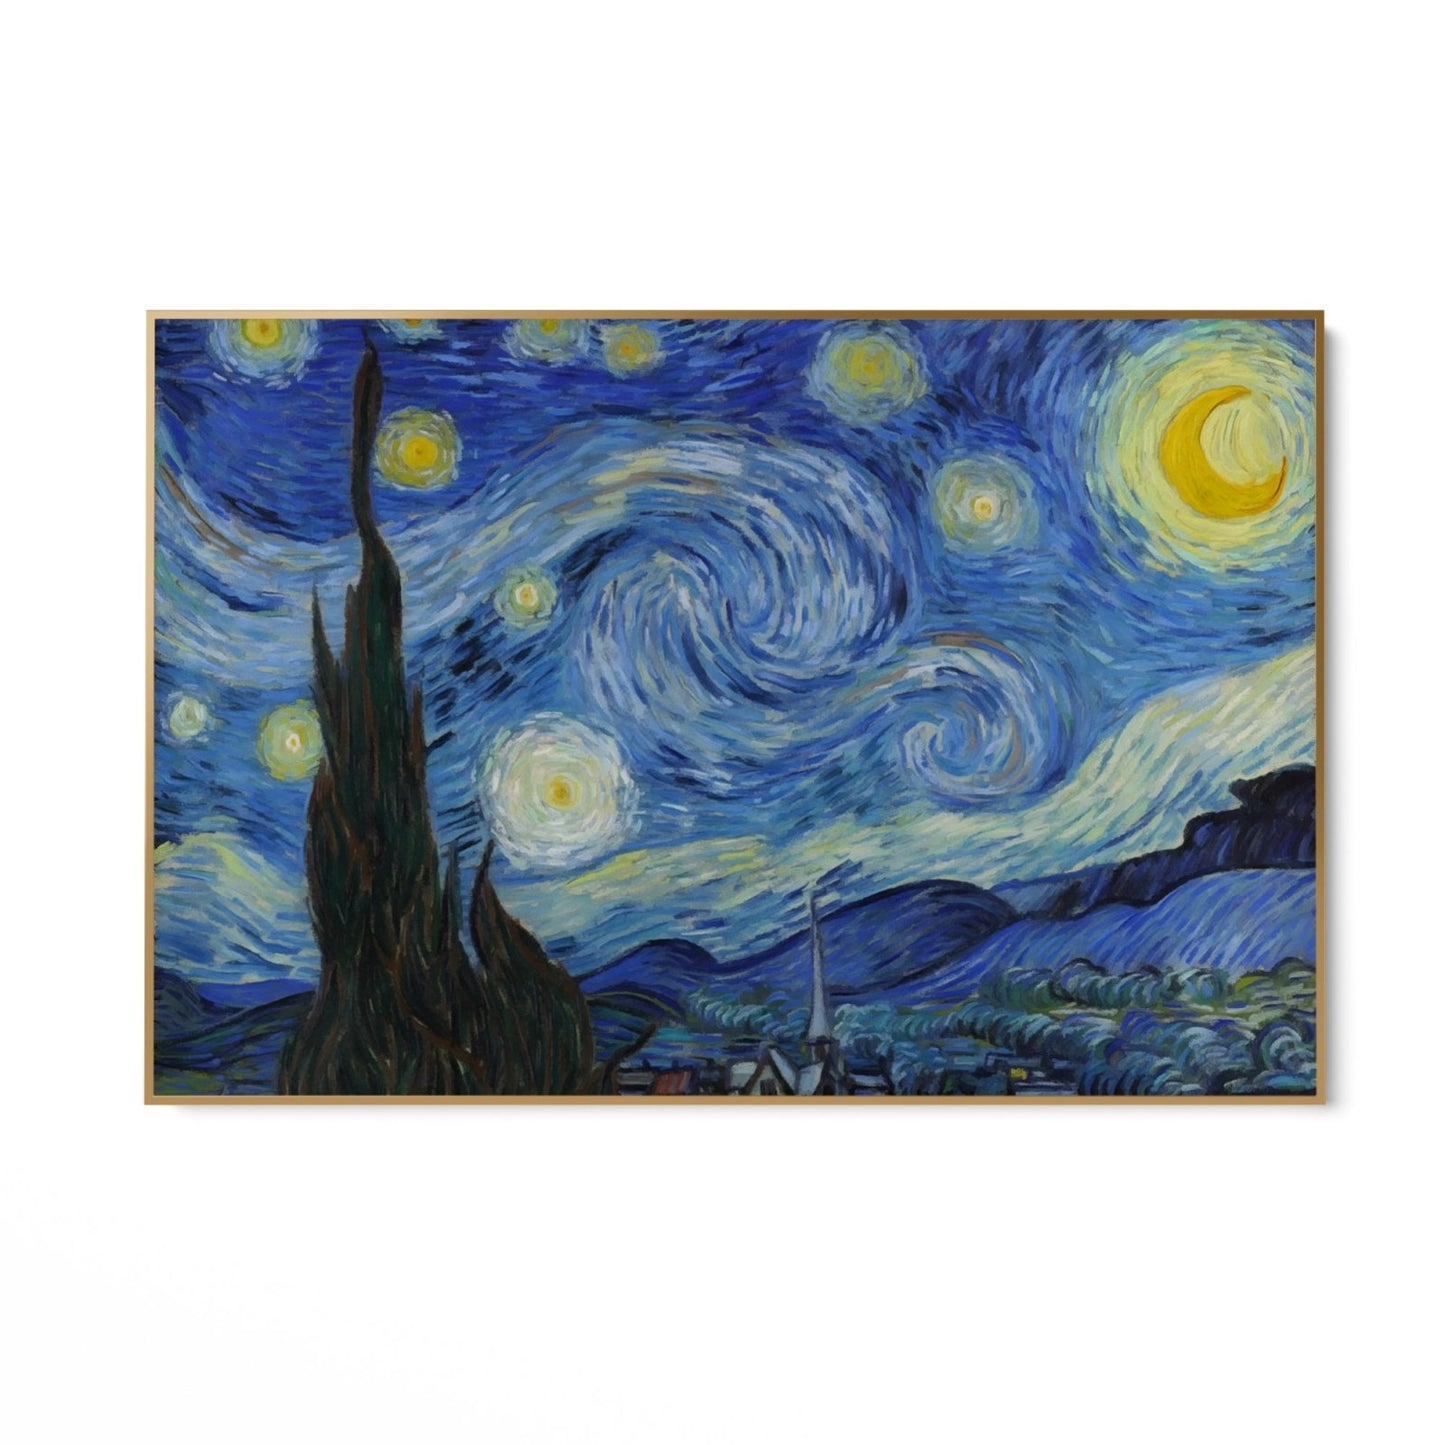 Hviezdna noc, Vincent Van Gogh